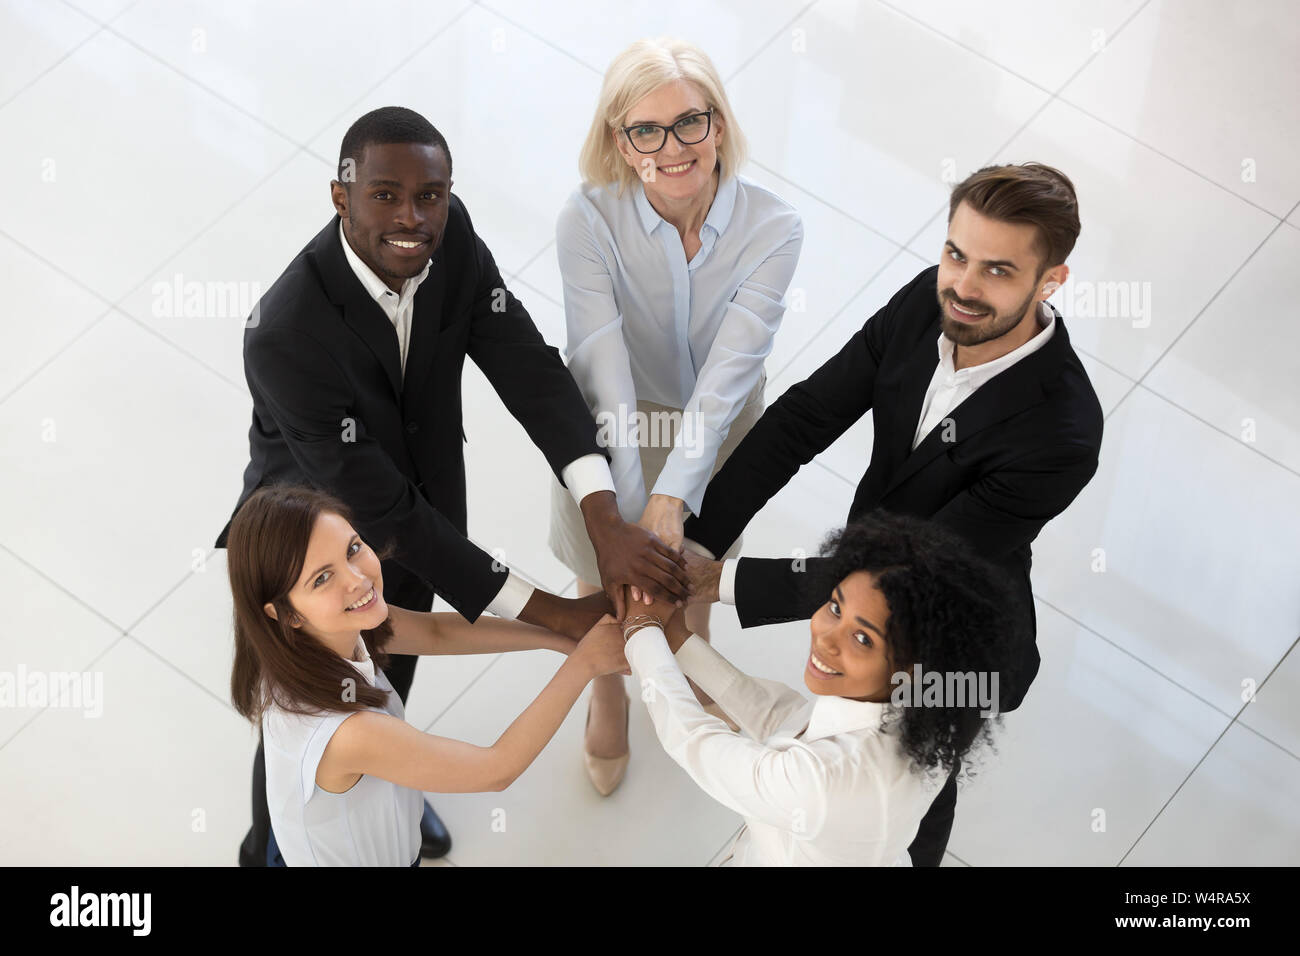 Lächelnd team Mitarbeiter Ablagestapel der Hände der Ansicht von oben Stockfoto